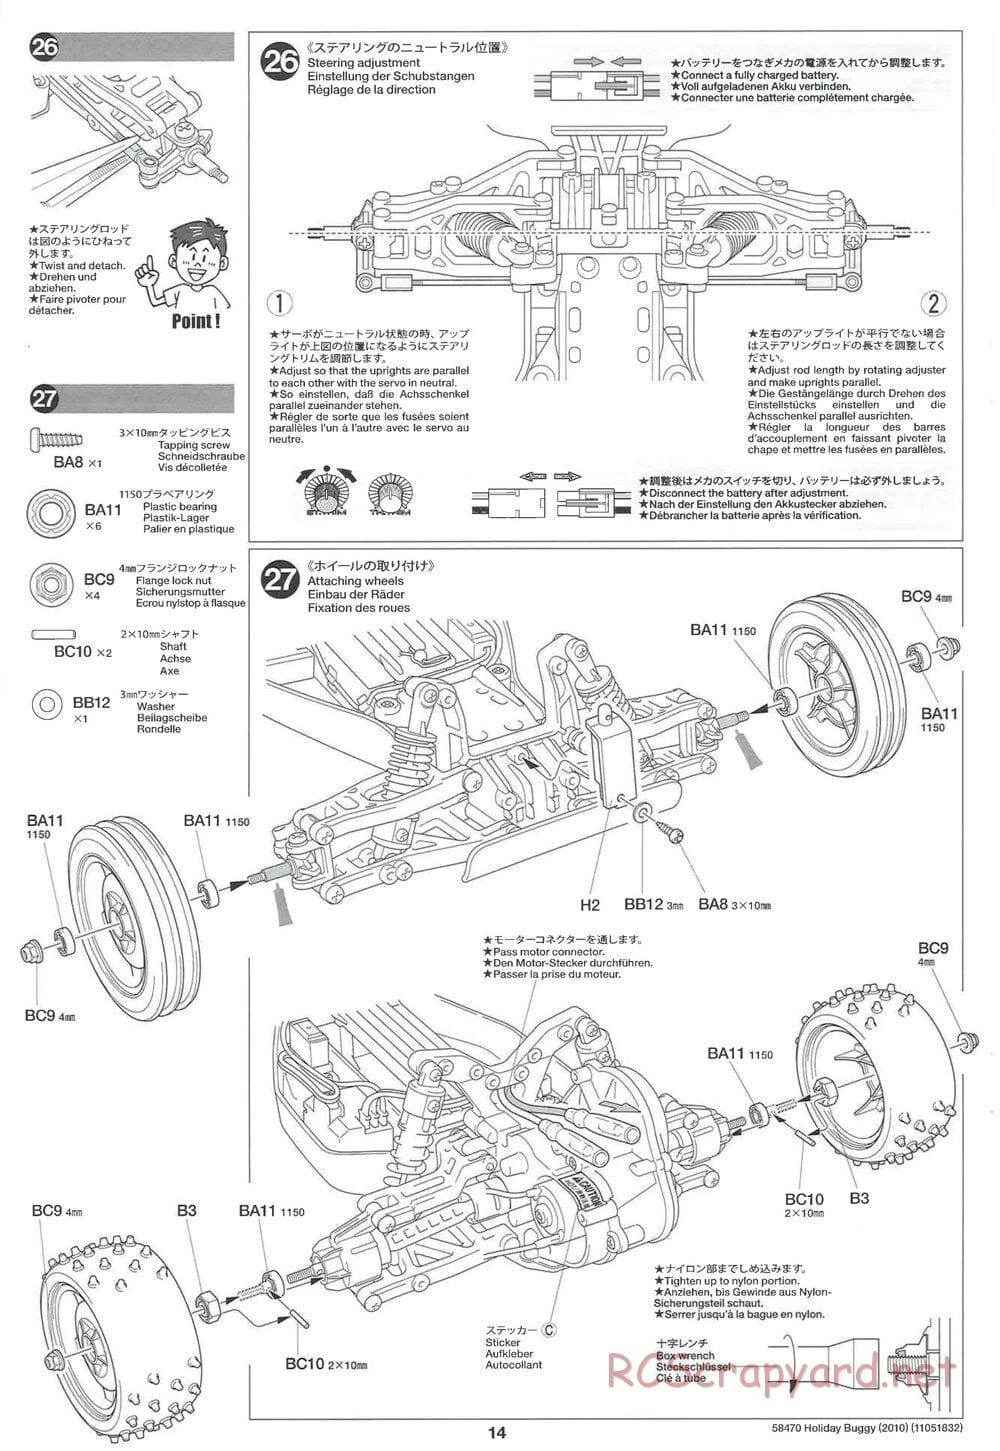 Tamiya - Holiday Buggy 2010 Chassis - Manual - Page 14